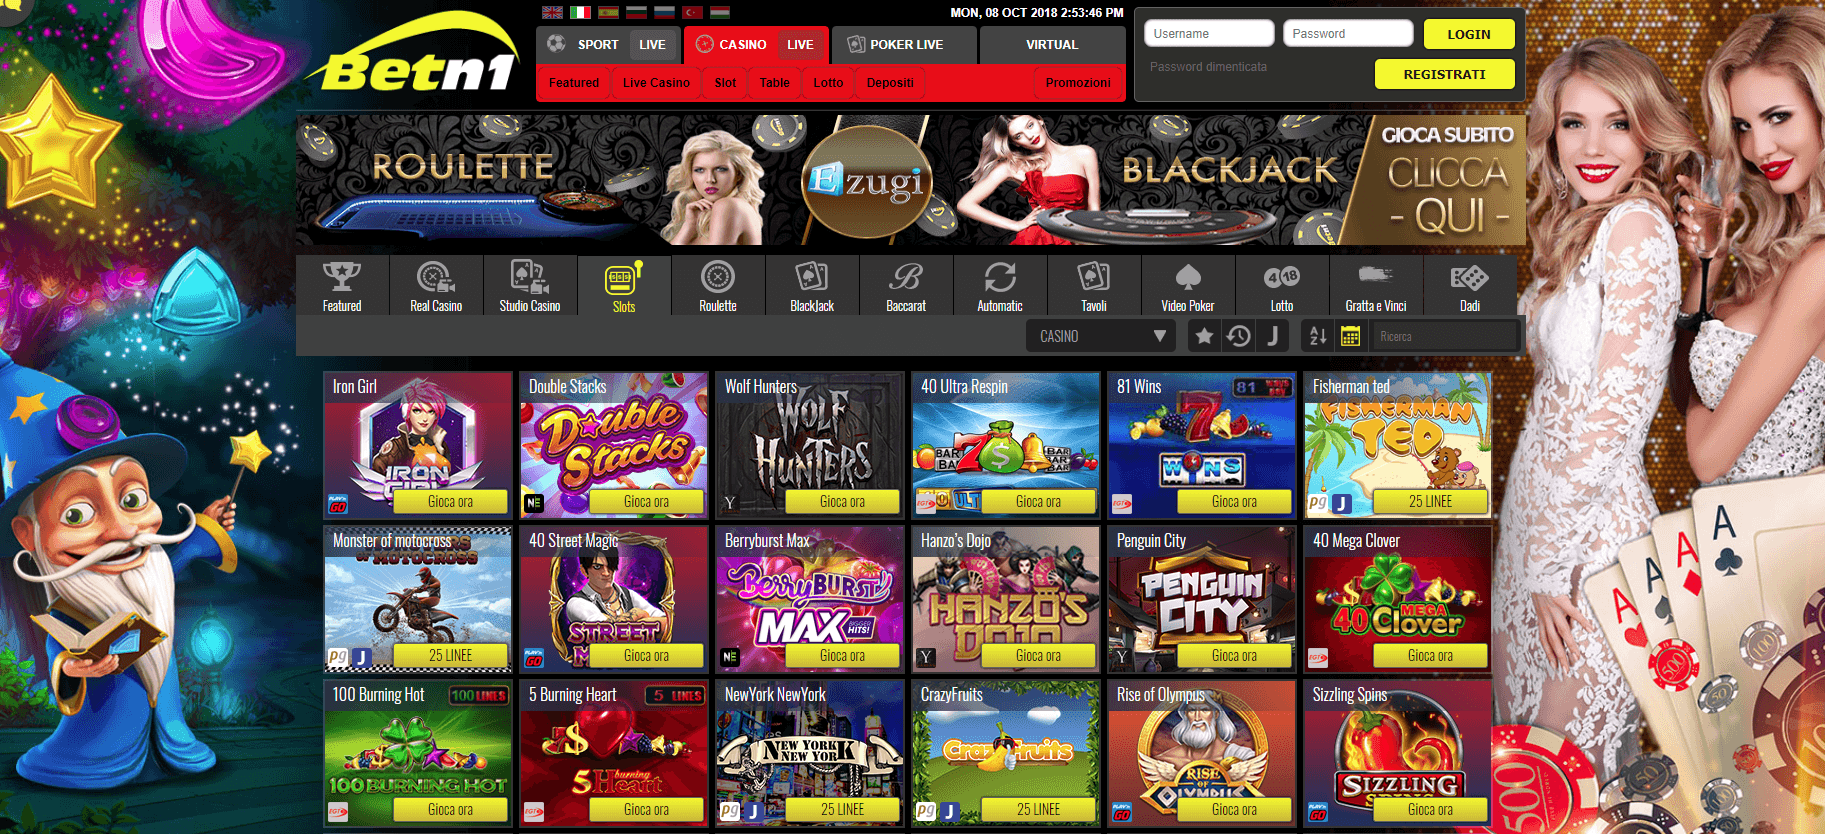 Betn1 Casino Giochi di slot machine gratis 2018